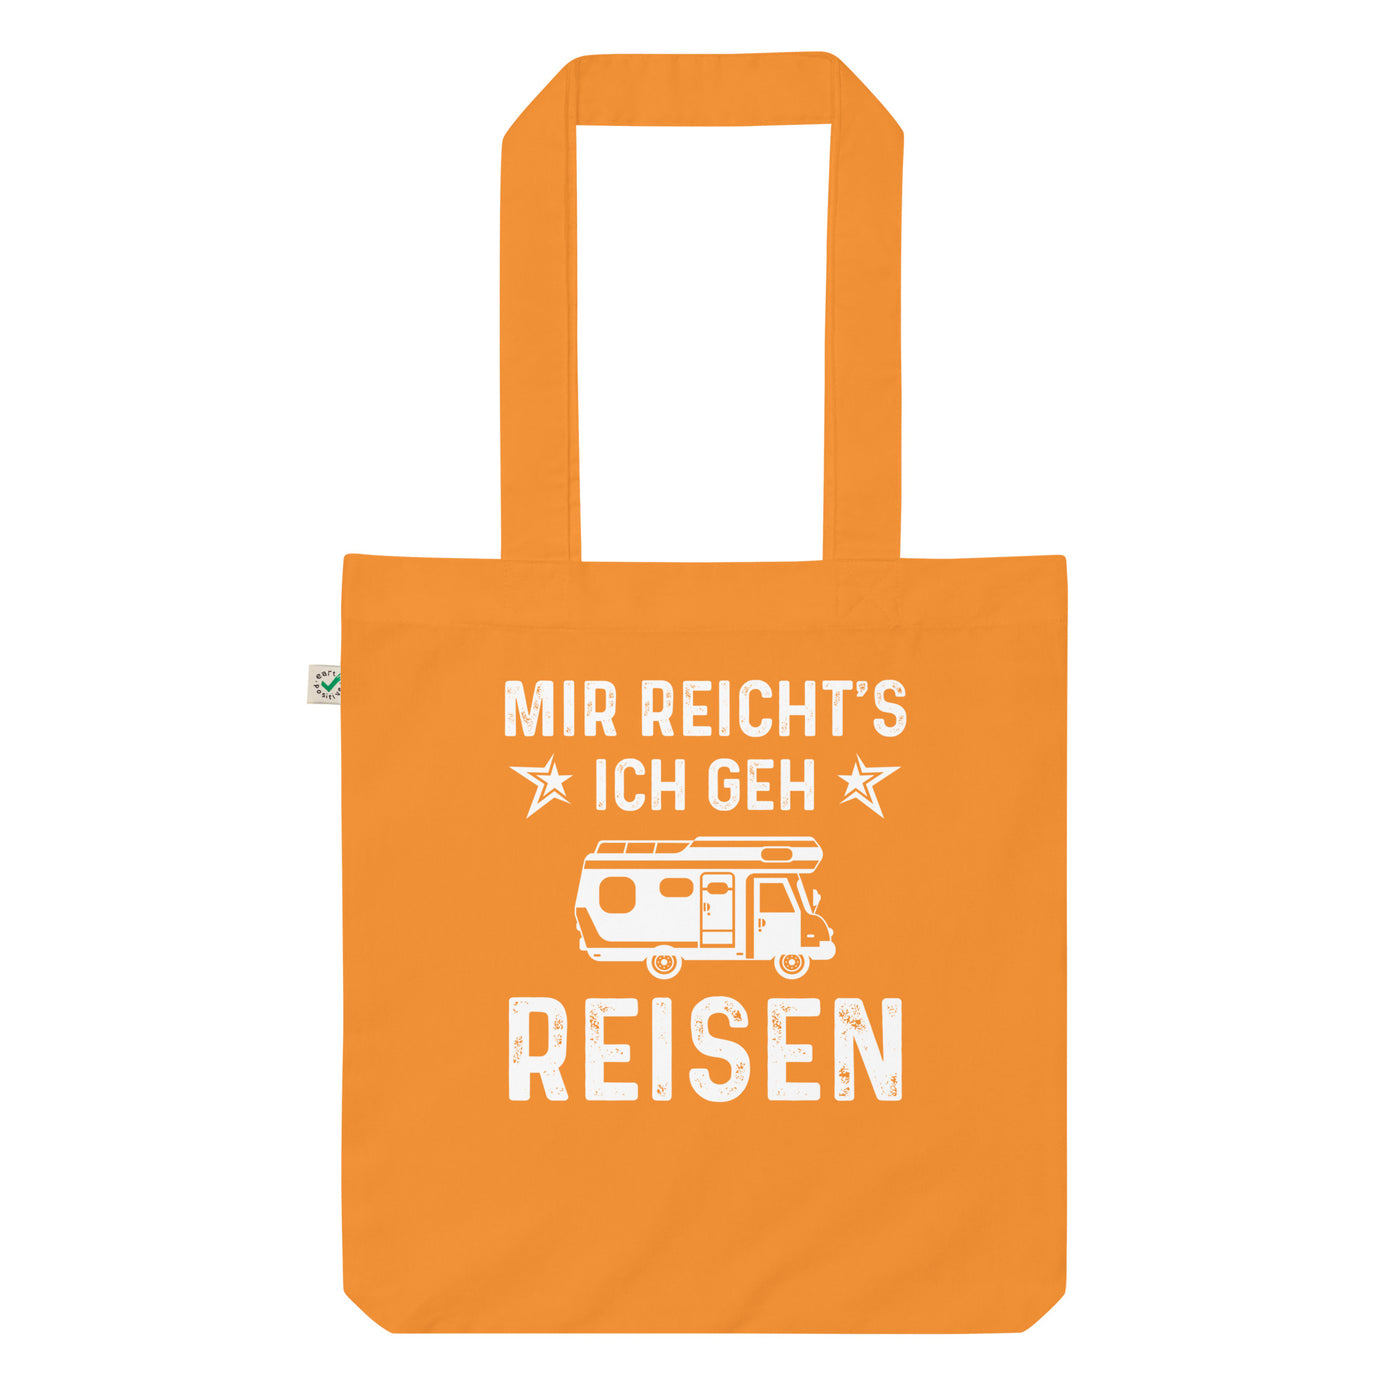 Mir Reicht'S Ich Gen Reisen - Organic Einkaufstasche camping Cinnamon